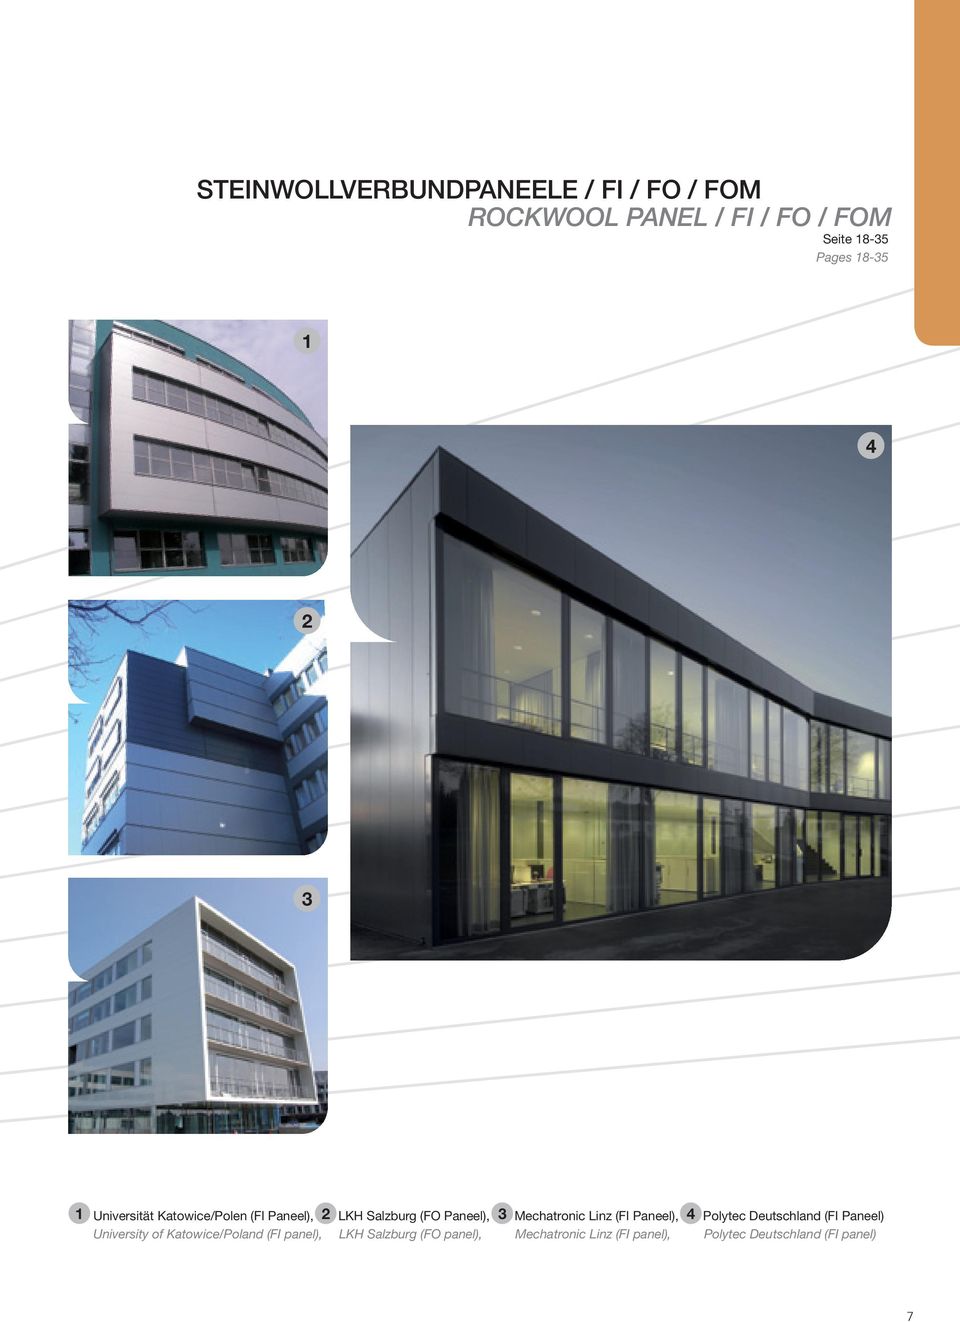 Mechatronic Linz (FI Paneel), 4 Polytec Deutschland (FI Paneel) University of